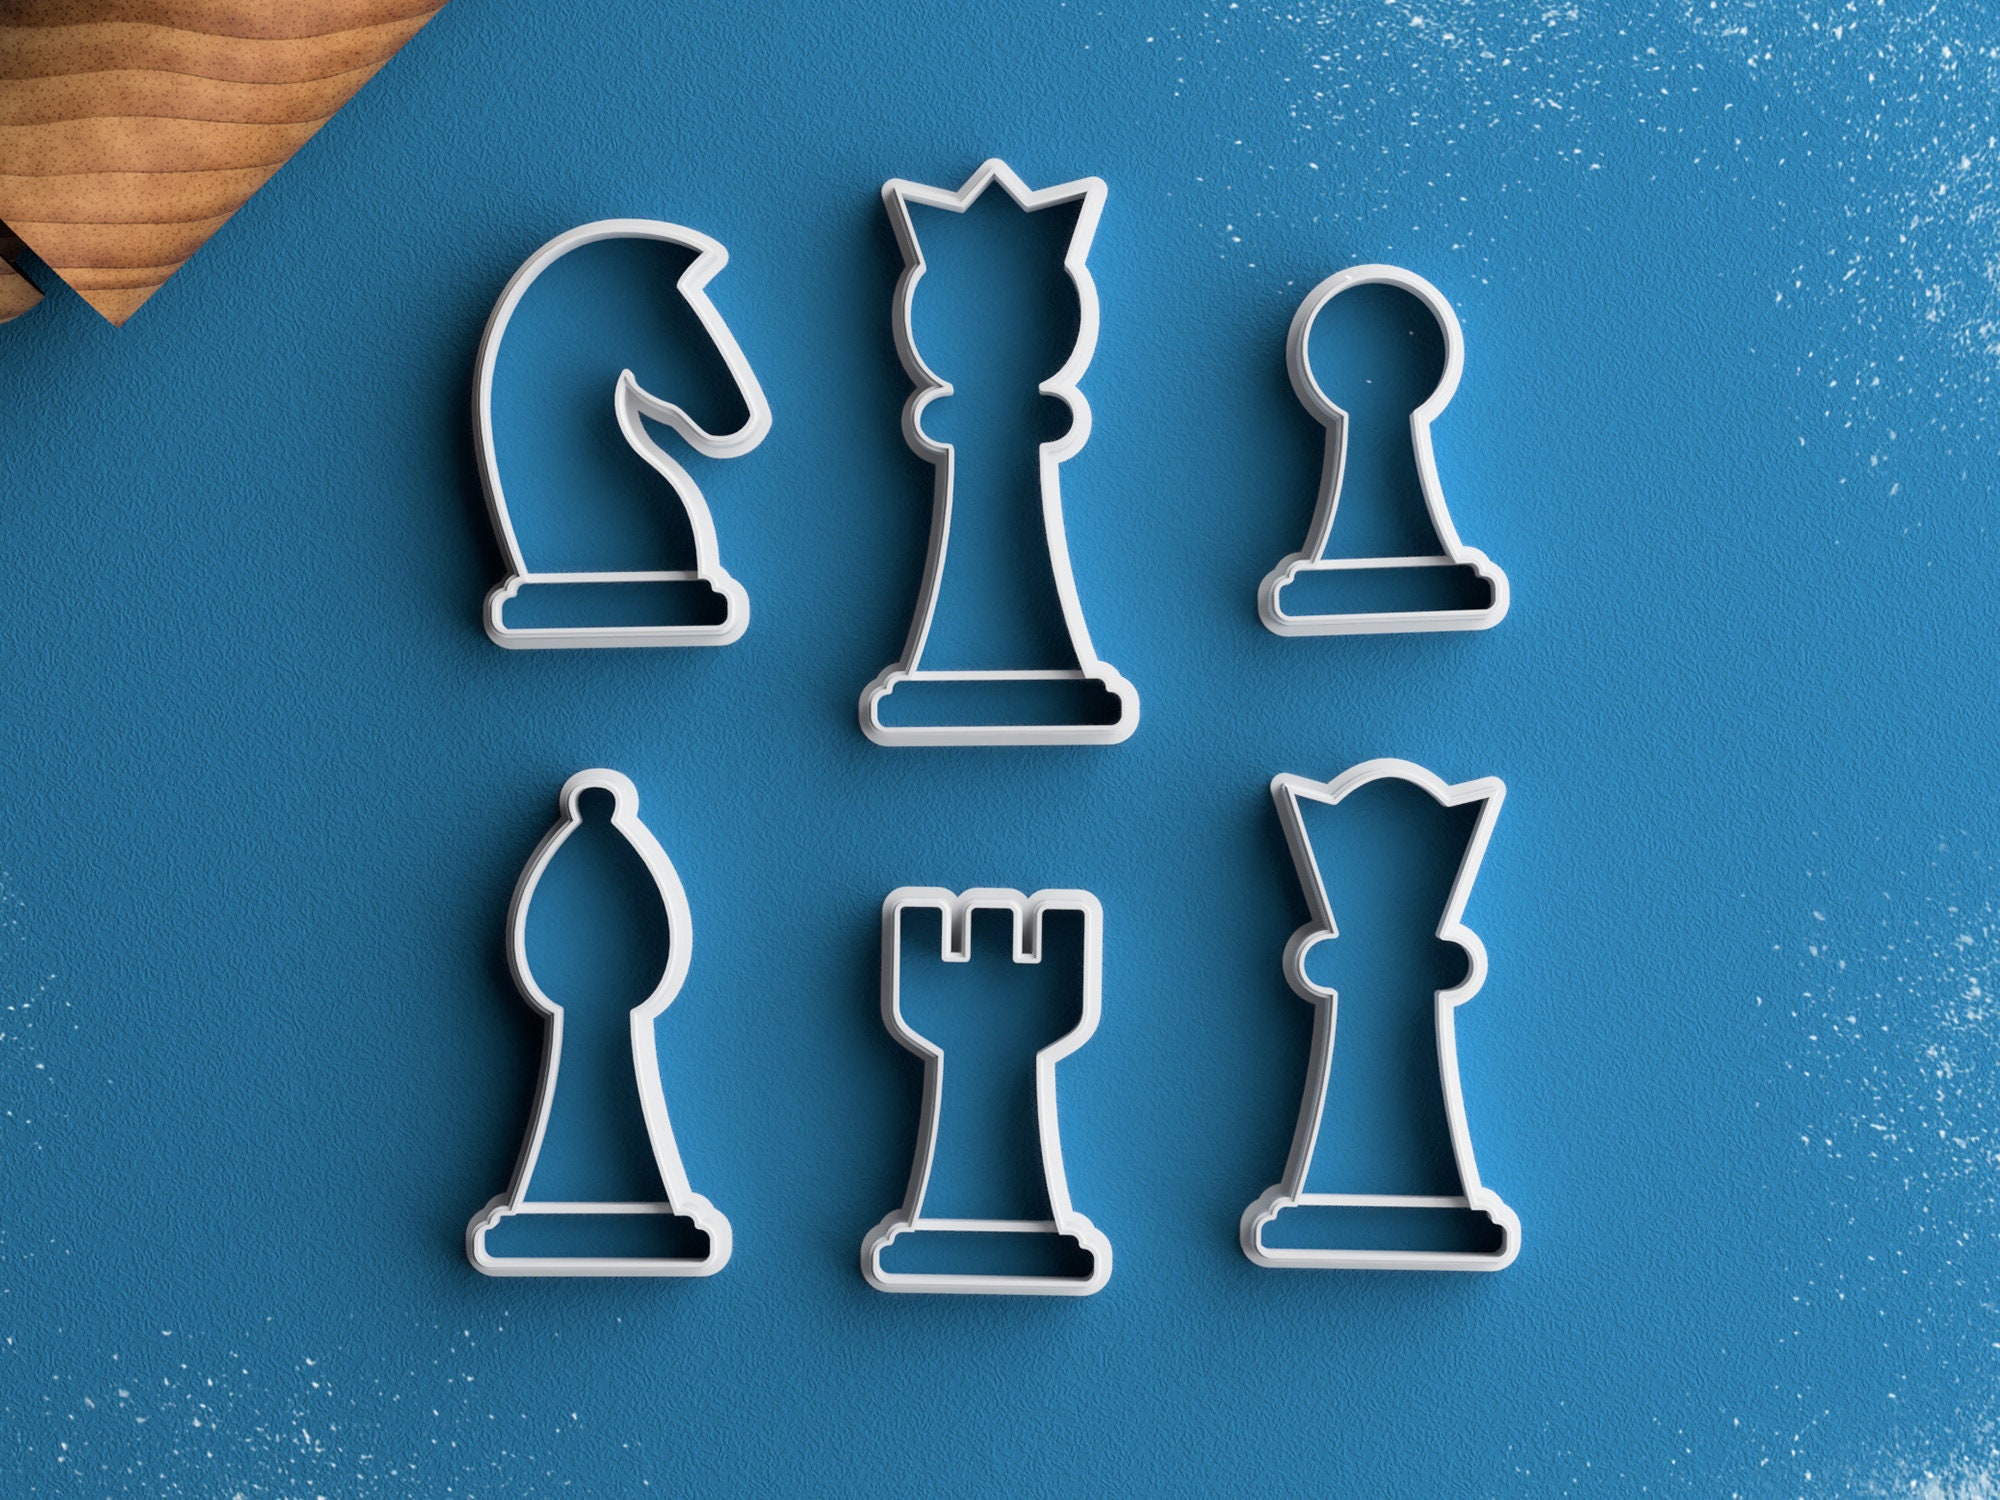 Casual Chess - Jogo Online - Joga Agora